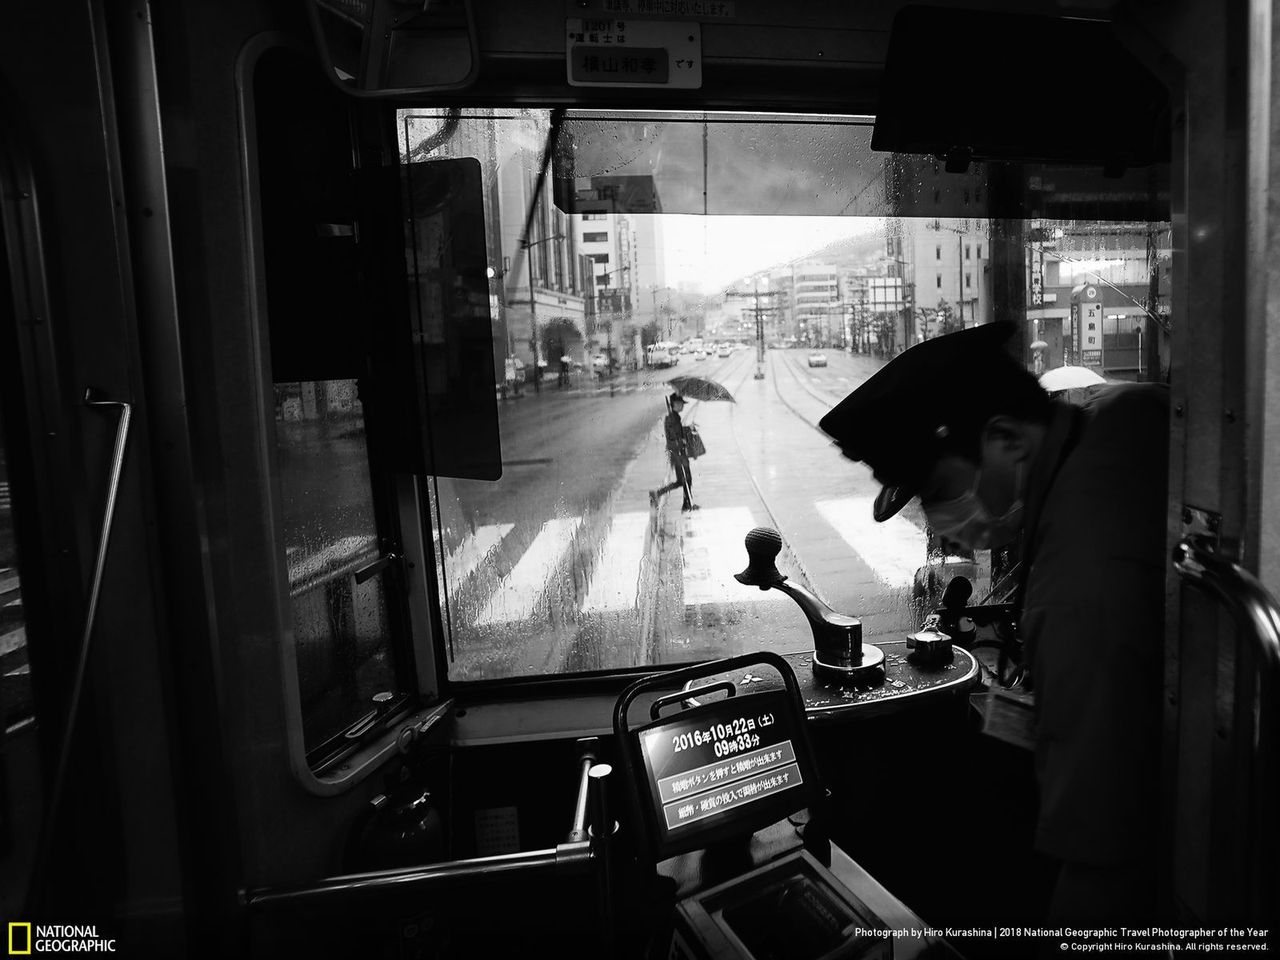 Pierwsze miejsce w kategorii "Miasta" zajął Hiro Kurashina z Japonii za zdjęcie, które przedstawia widok z tramwaju w Nagasaki.